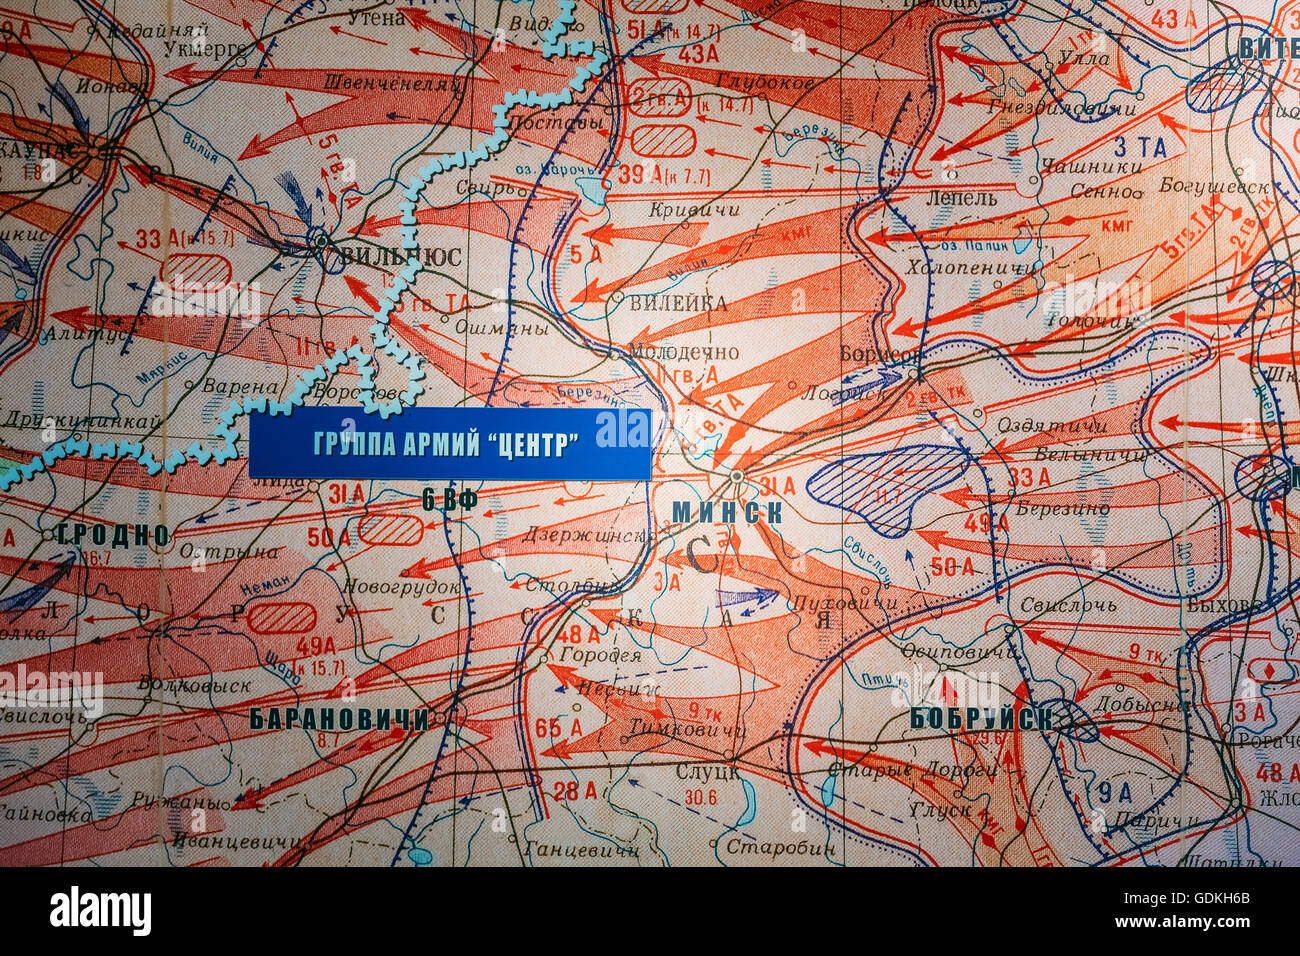 Die Ausstellung im belarussischen Museum des großen Vaterländischen Krieges - Truppen Karte der sowjetischen Offensive in der Wehrmacht in der lib Stockfoto